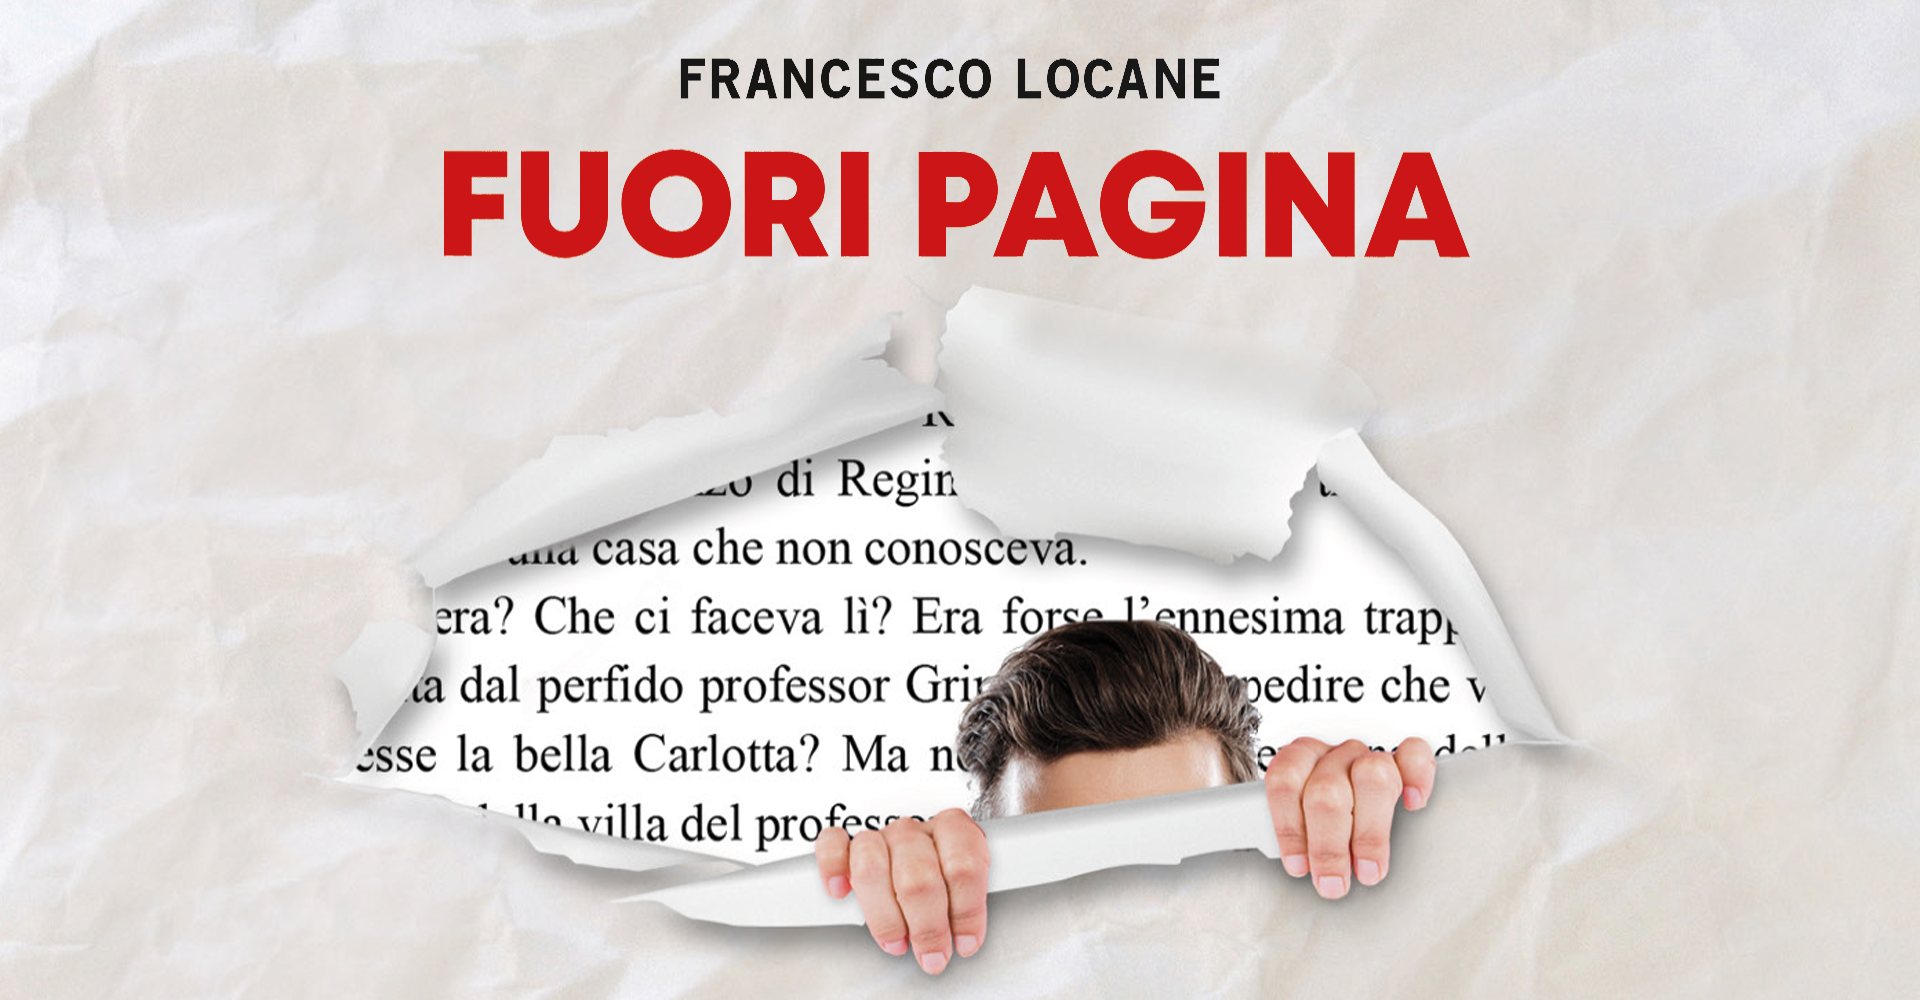 Presentazione del libro: "FUORI PAGINA" di Francesco Locane | @La Tenda, Modena